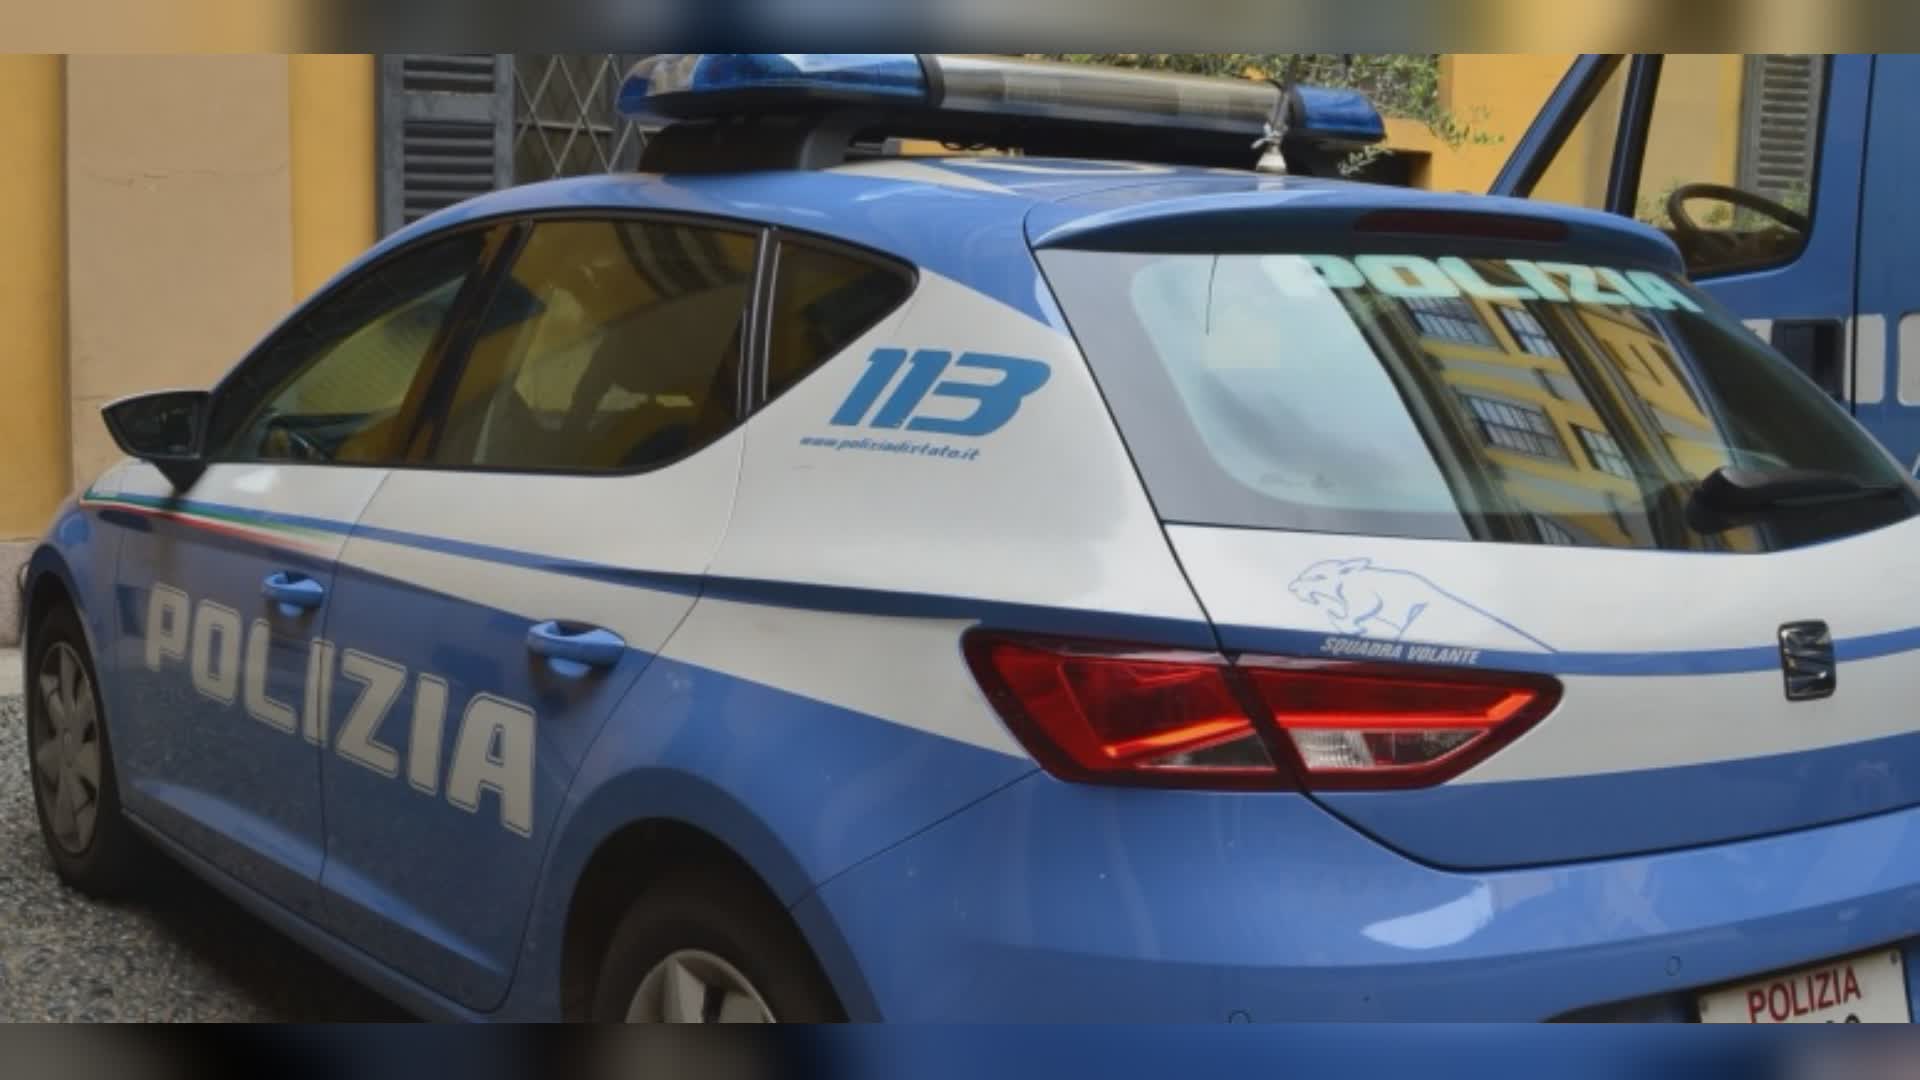 Spari a Sanremo, polizia non trova elementi: probabile falso allarme